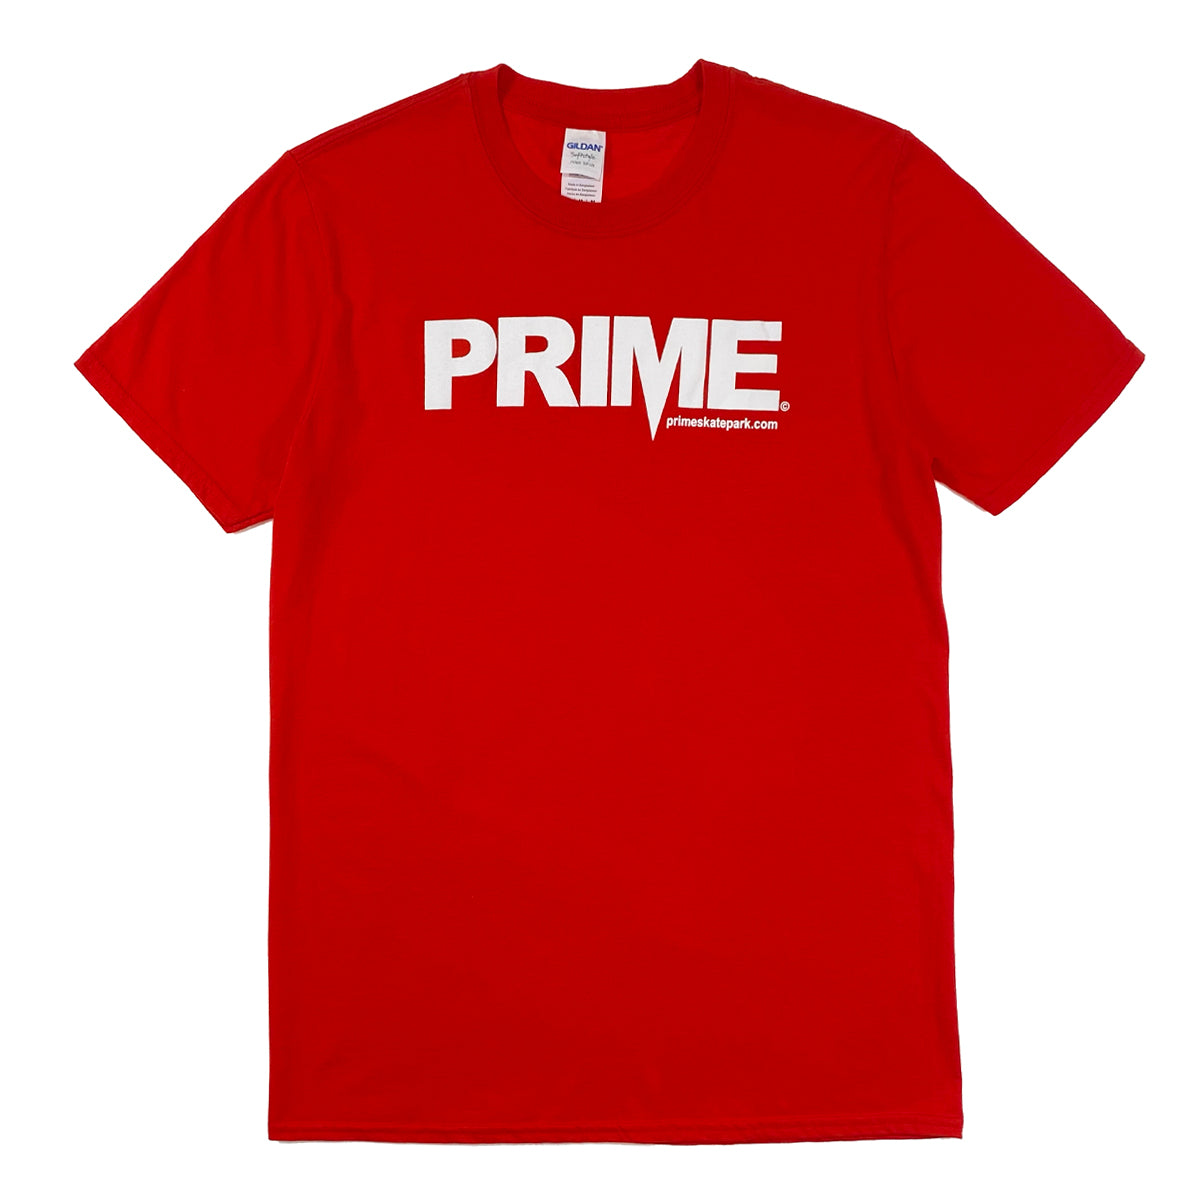 Prime Delux OG Logo T Shirt - Red / White - Prime Delux Store